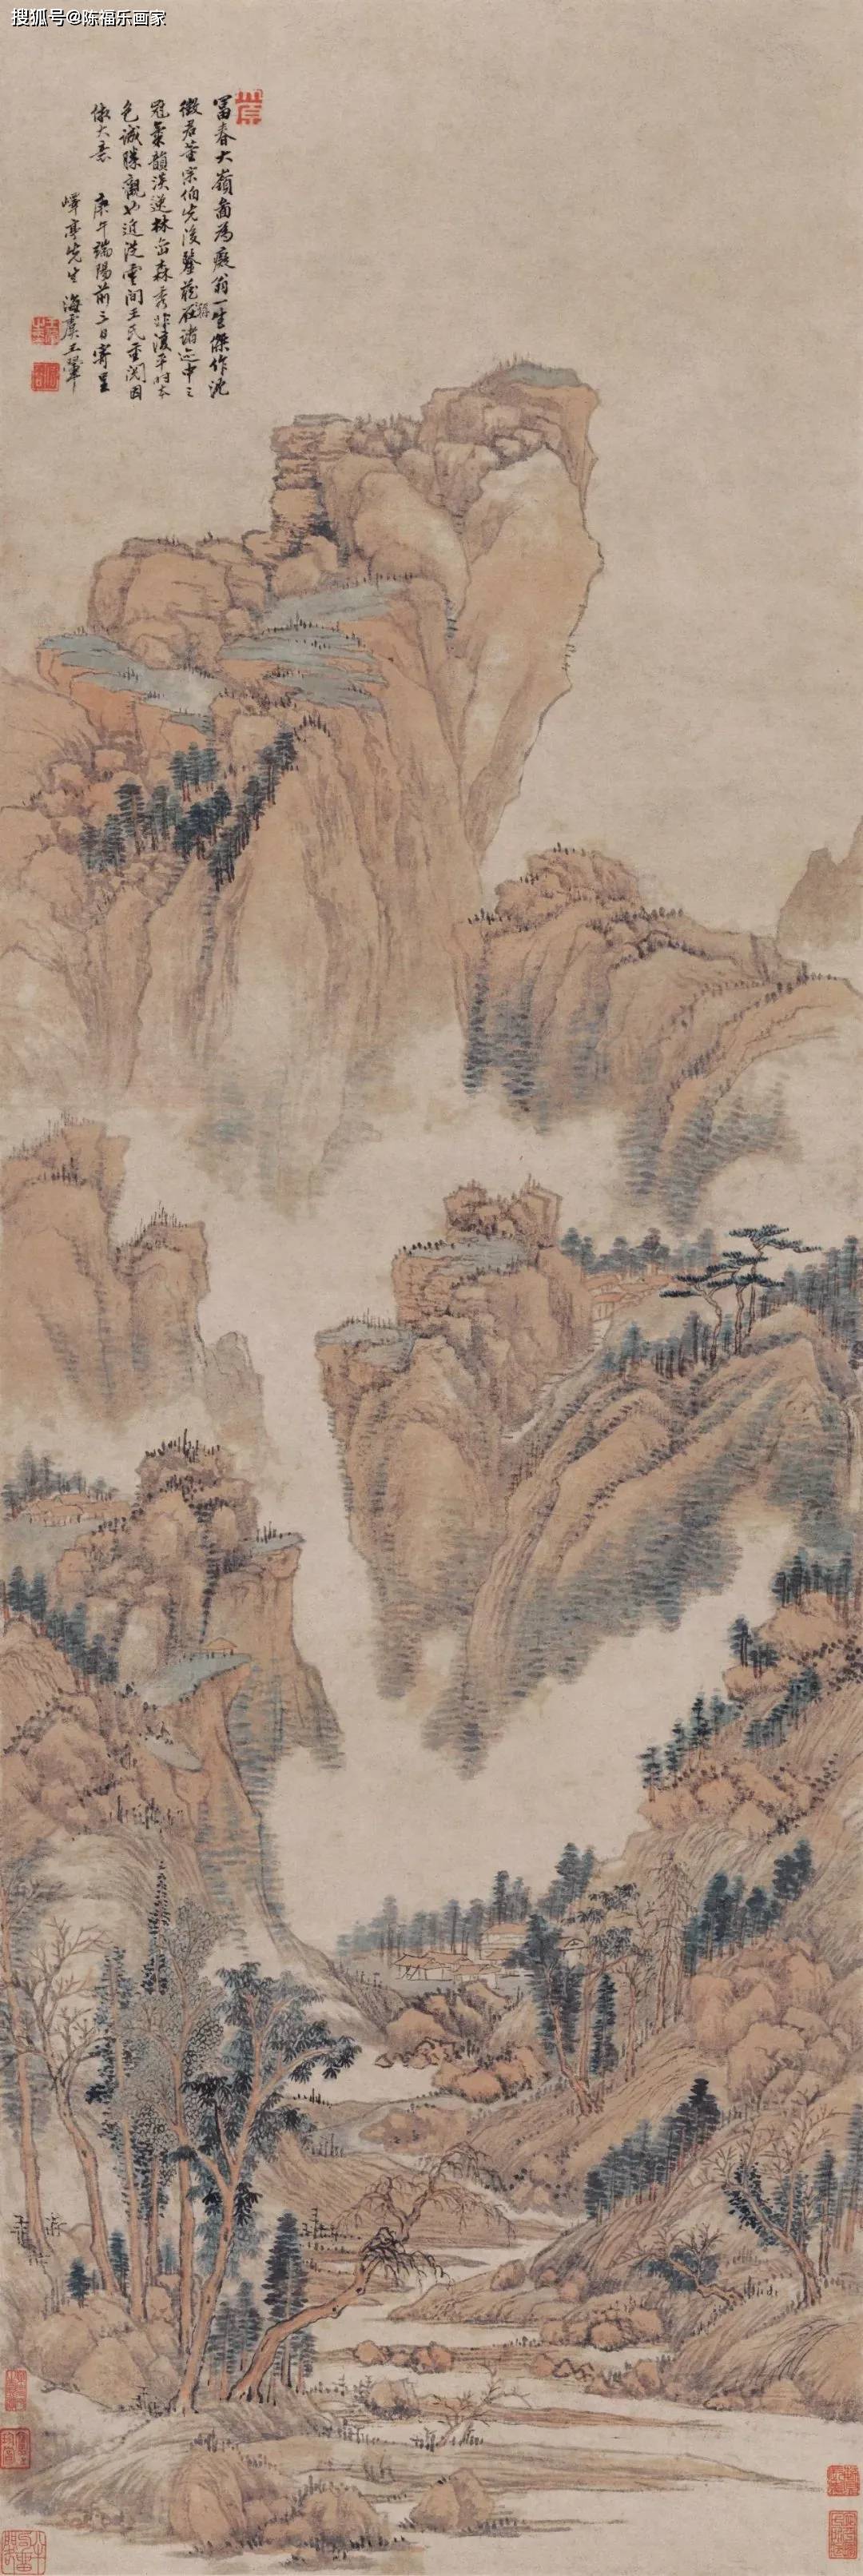 王翚(hui 一声)清代著名画家被称为"清初画圣"清初画坛正统派"四王"之